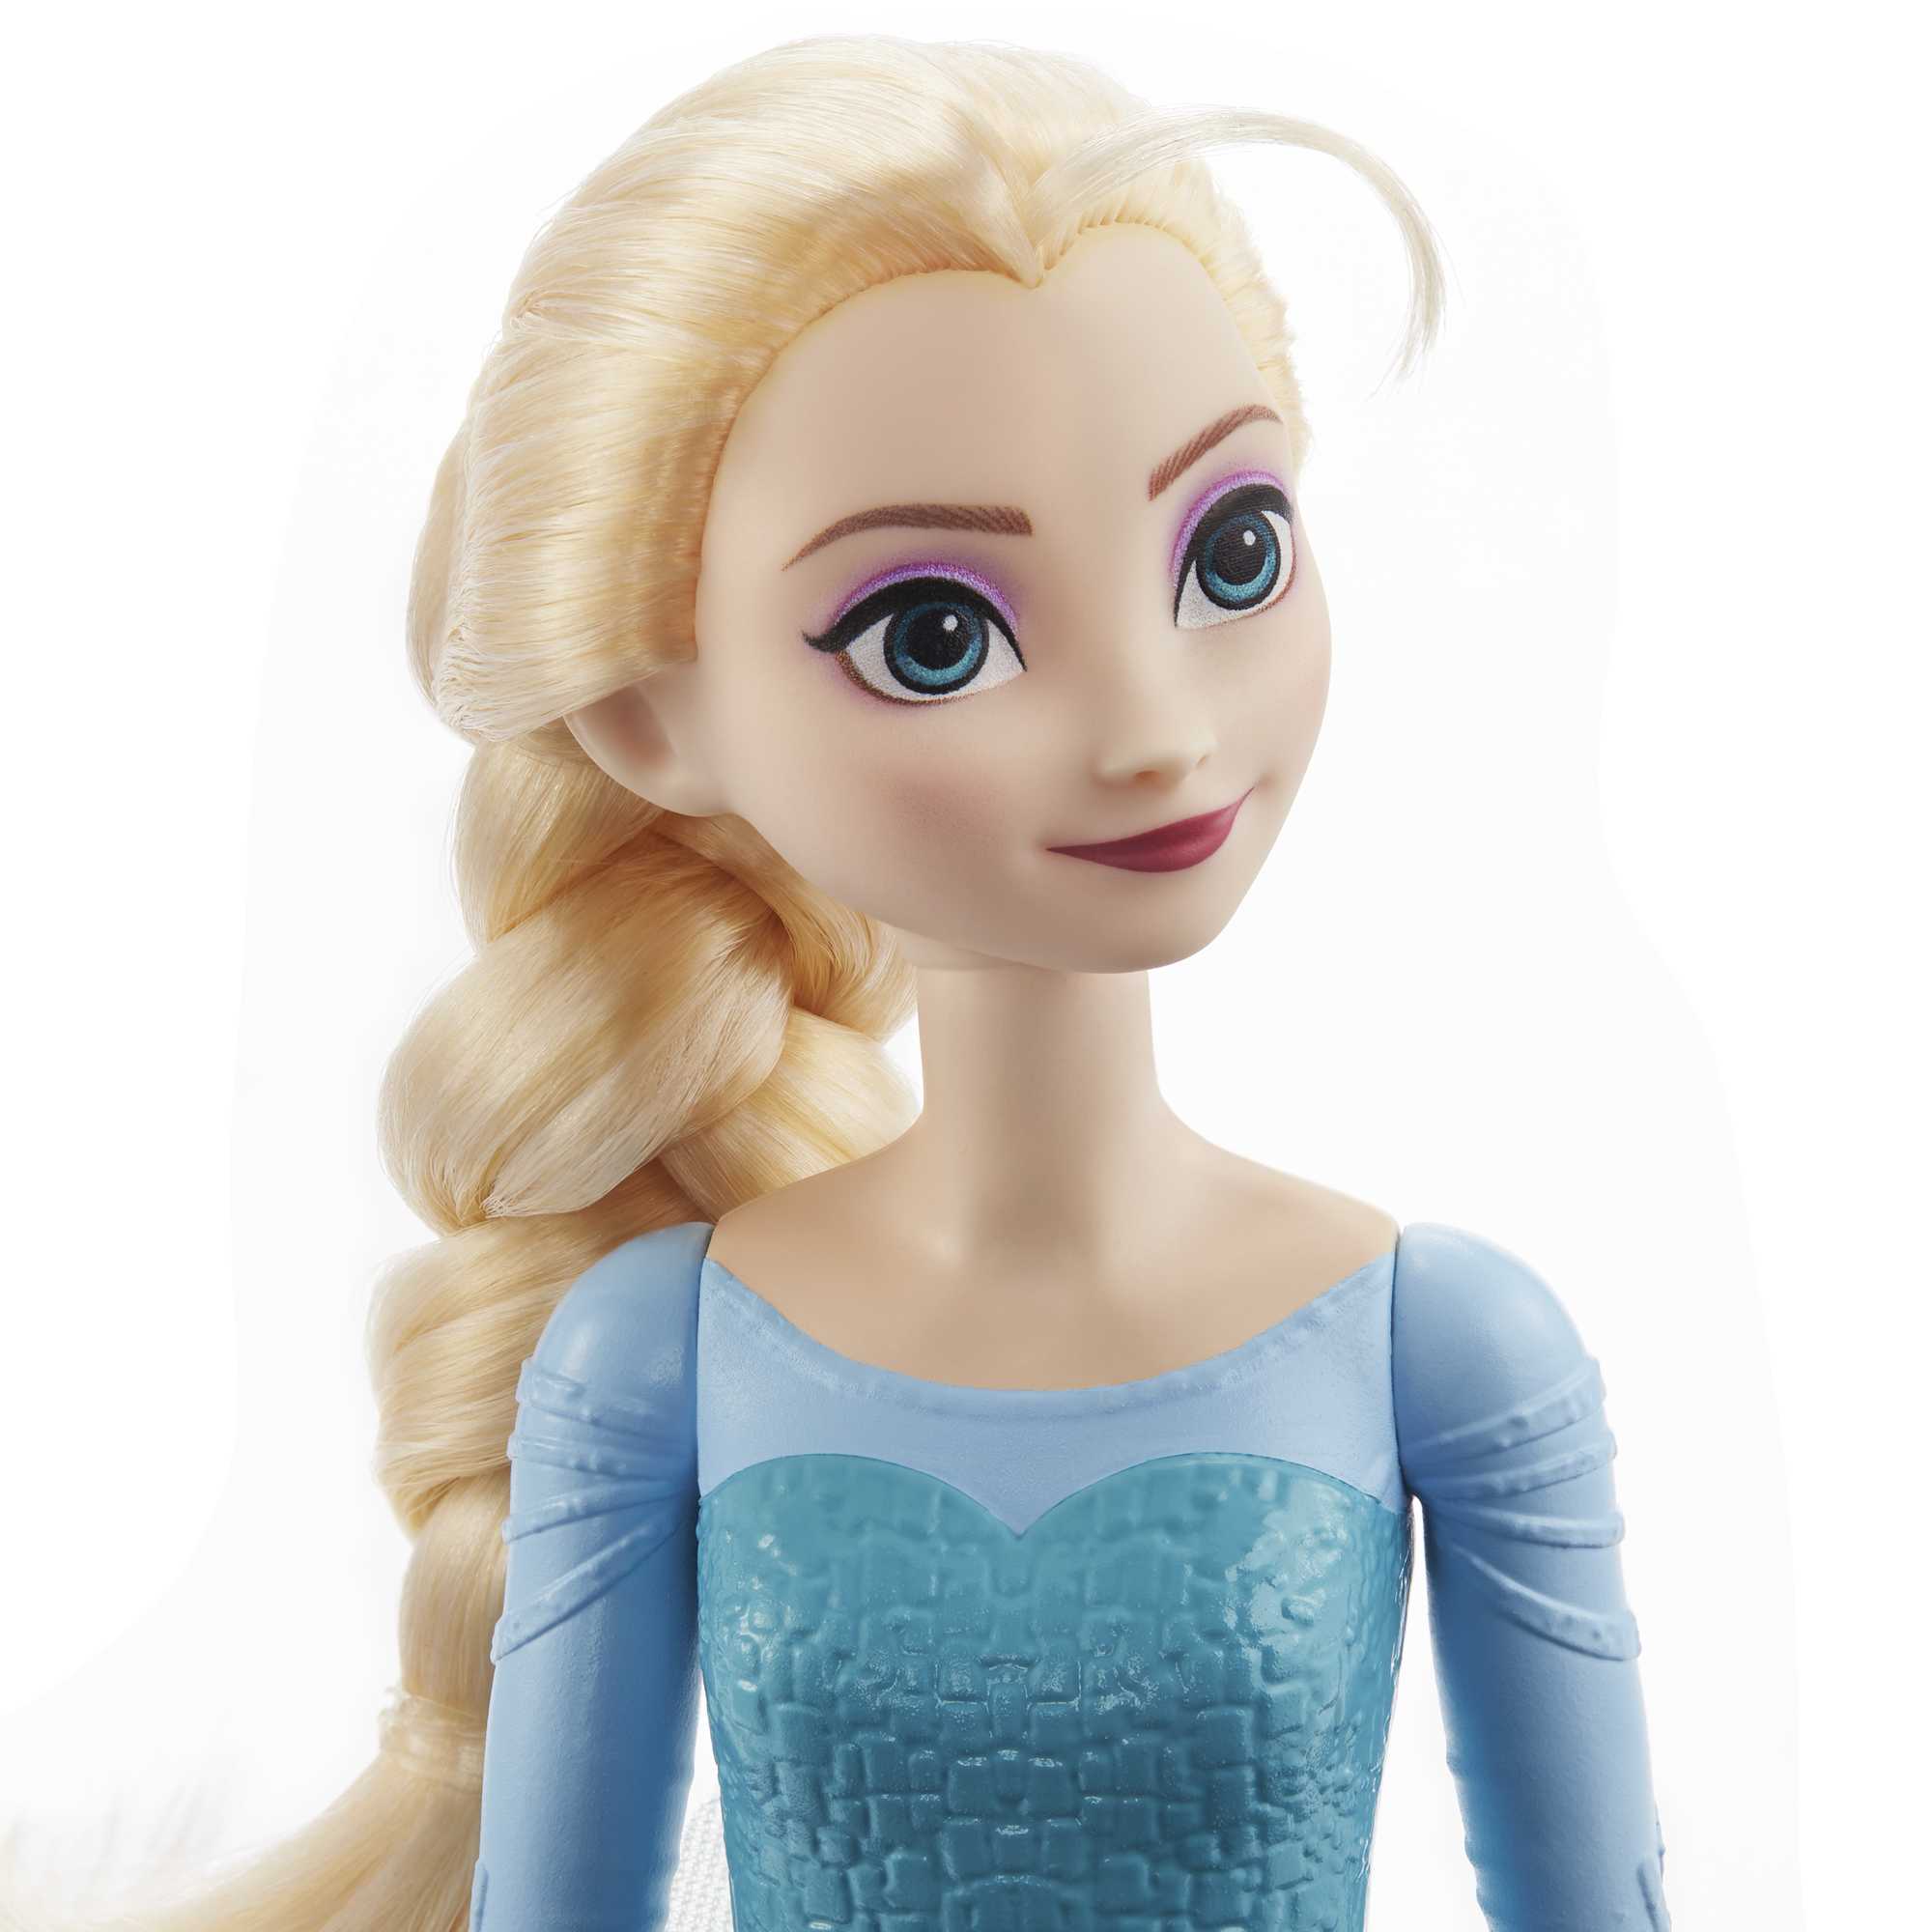 Poupée Disney Elsa la reine des neiges